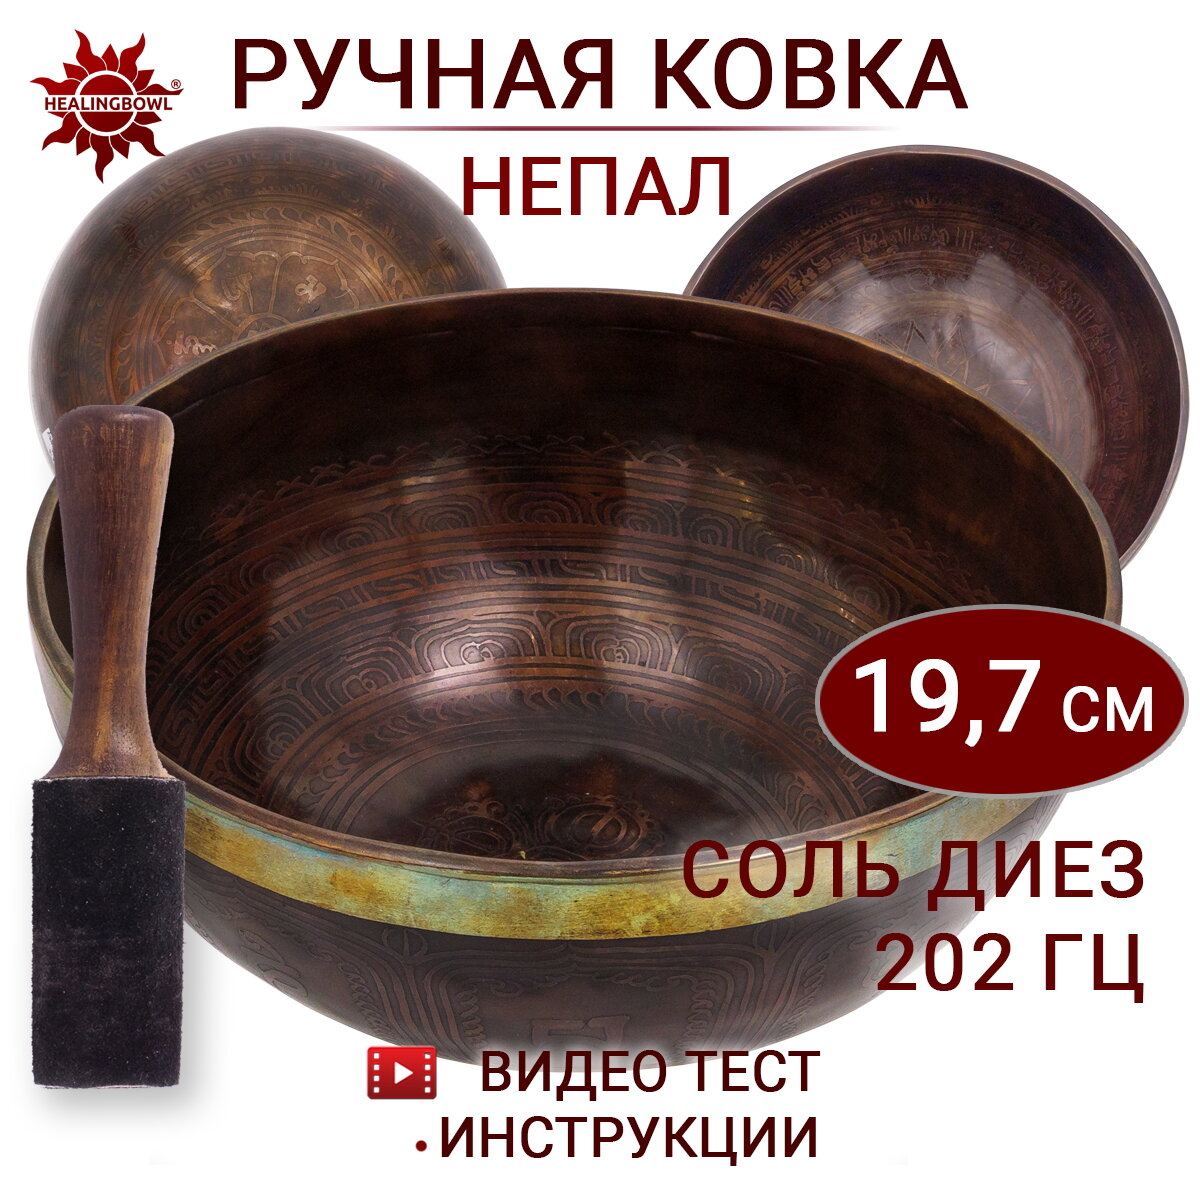 Healingbowl / Поющая чаша кованая c изображениями Соль диез, 202 Гц, 19,7 см / Непал / для йоги и медитации